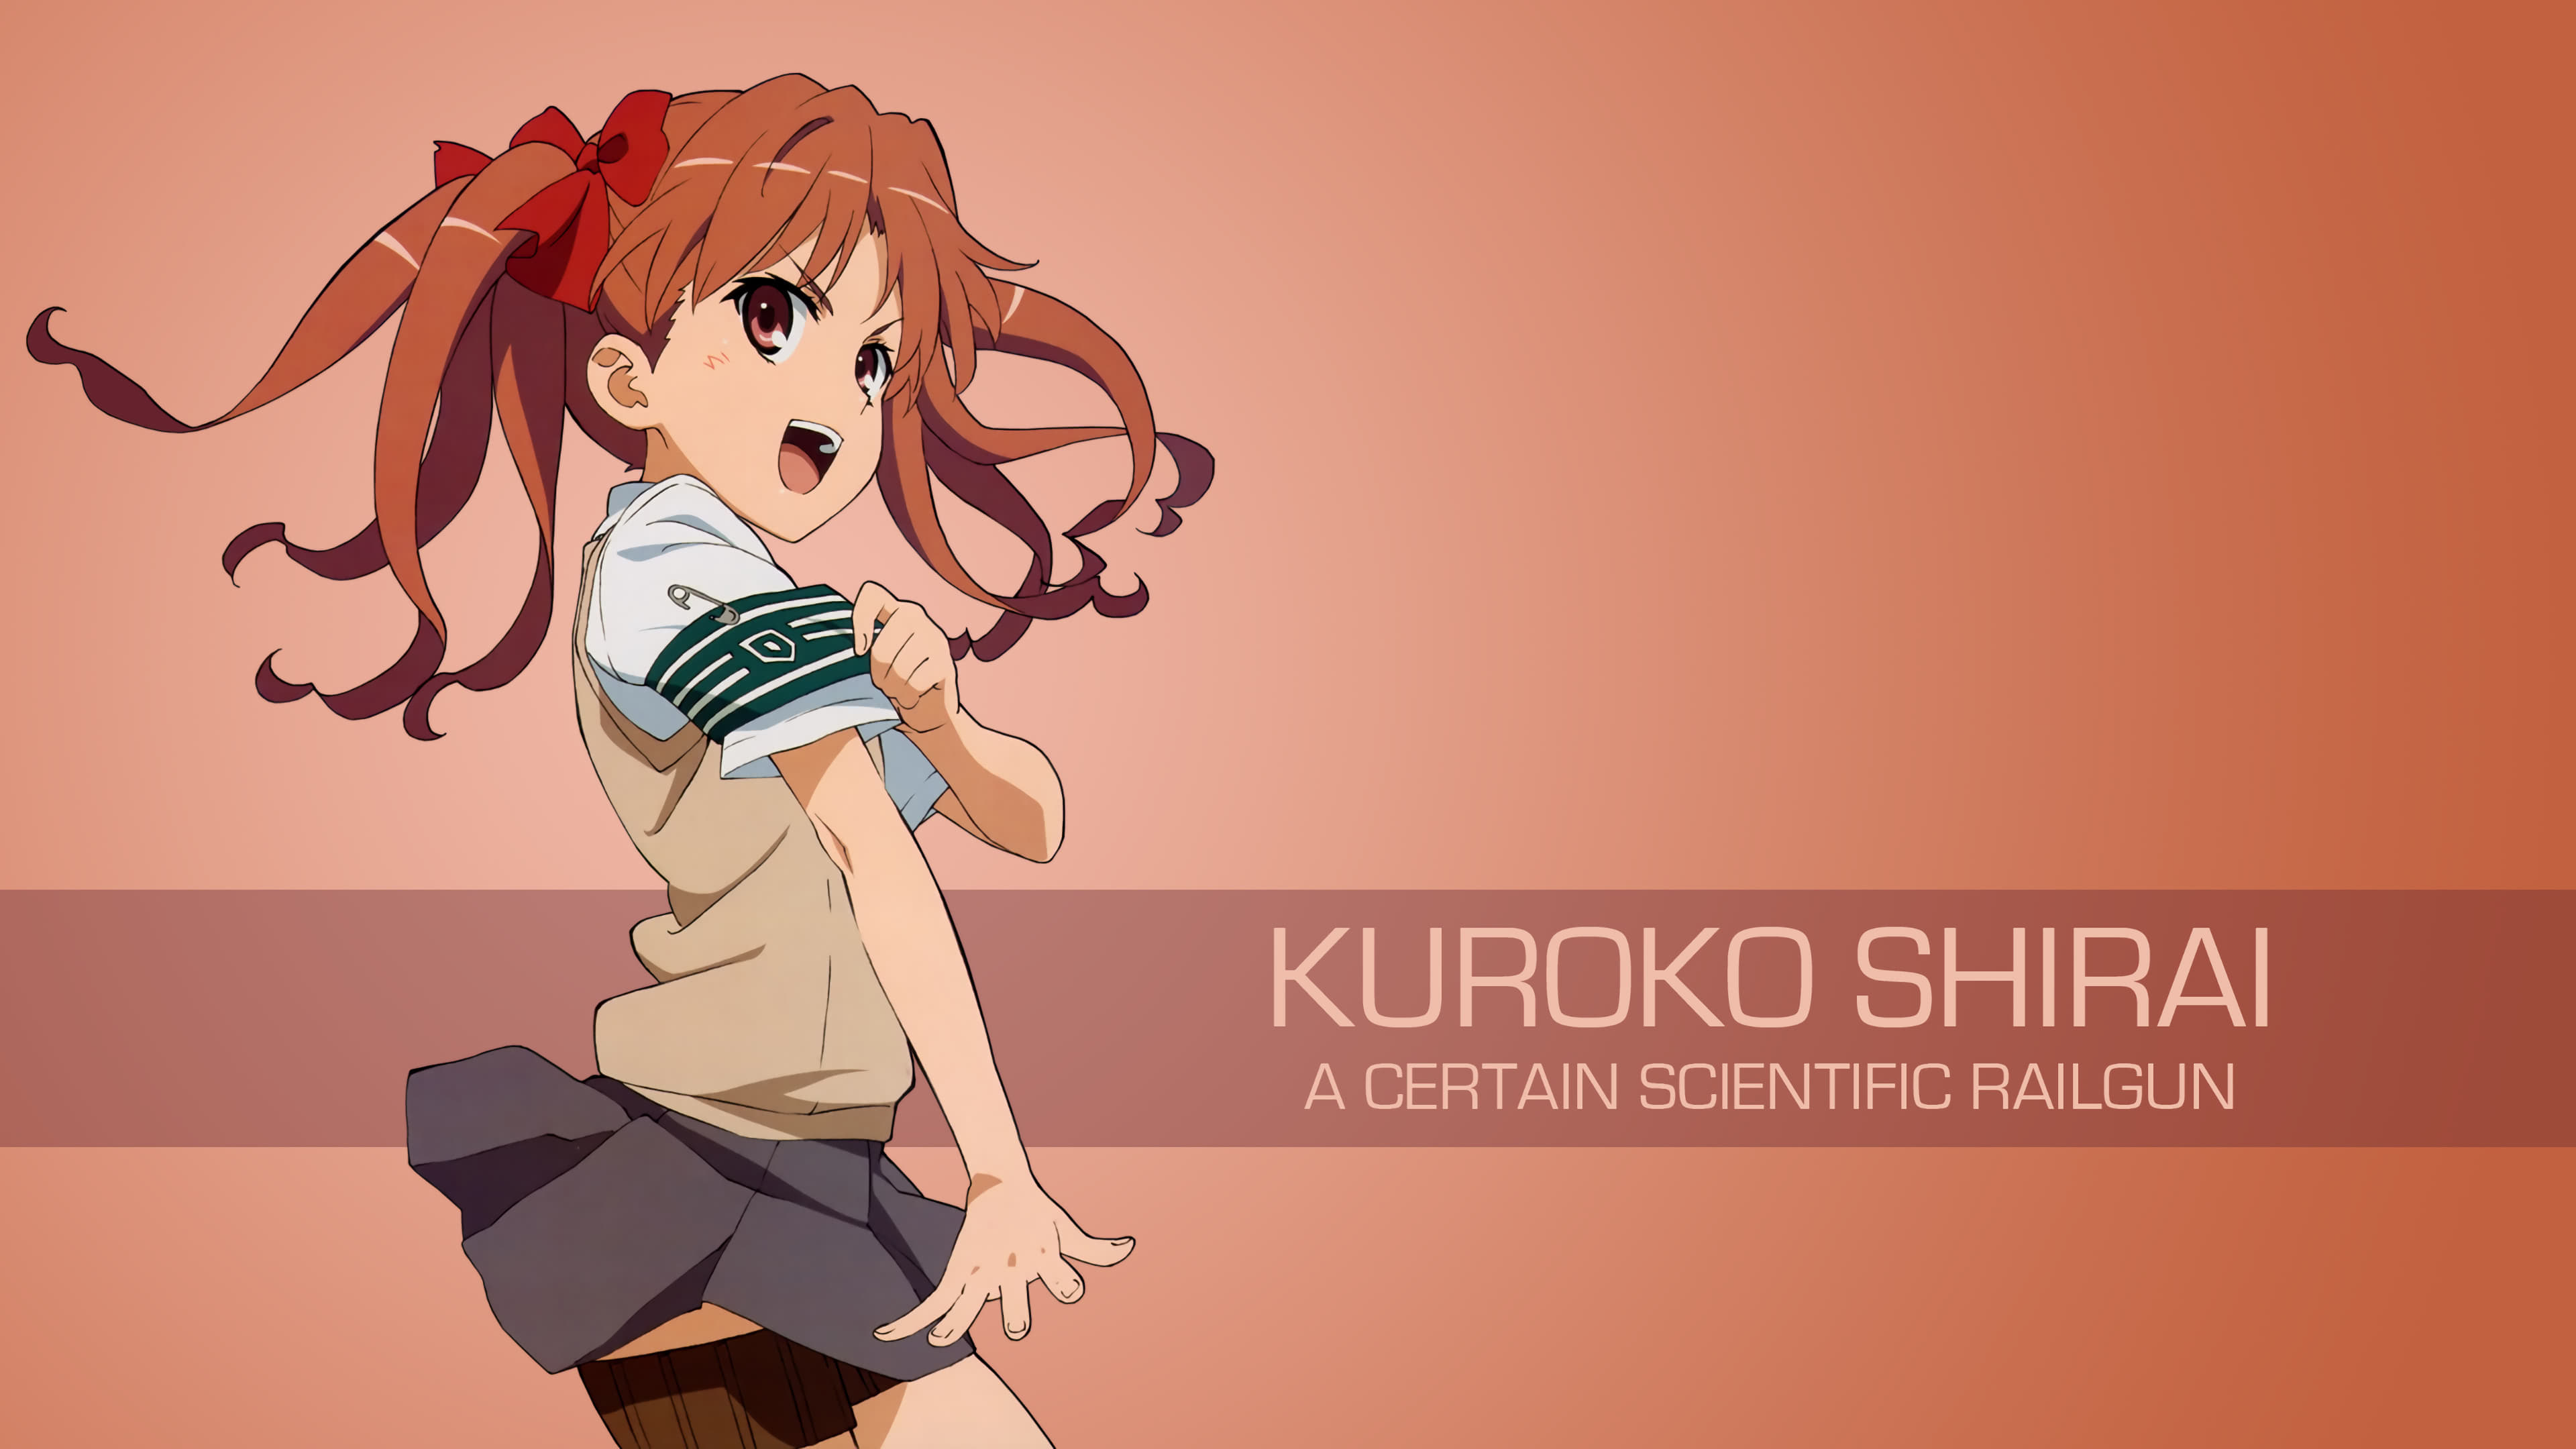 Kuroko Shirai A Certain Scientific Railgun UHD 4K Wallpaper | Pixelz